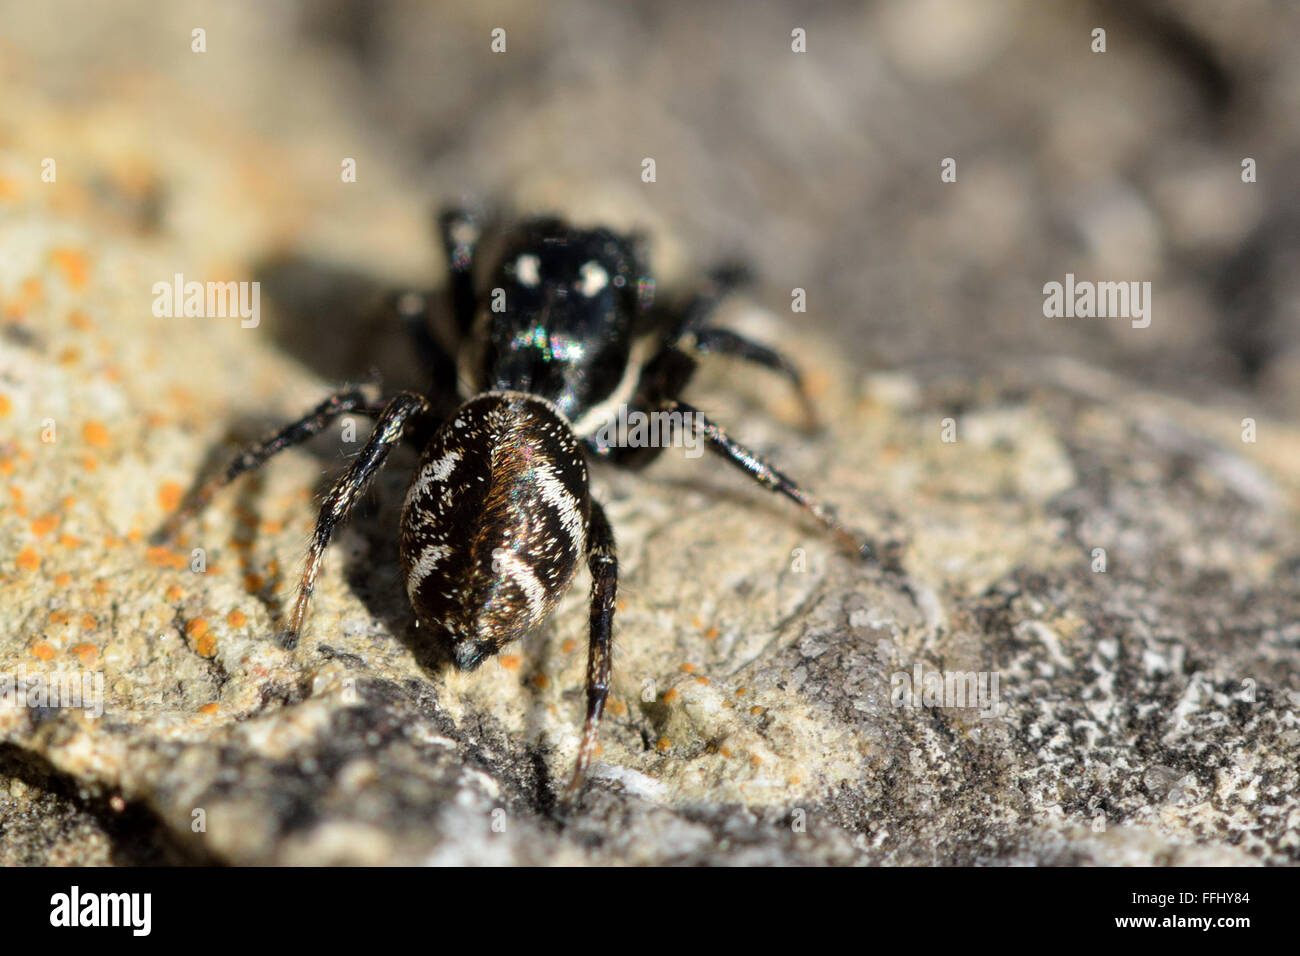 Zebra-Spinne (Salticus Scenicus). Schwarz / weiß gestreift Spinne (Familie  Salticidae) springen, zeigen Markierungen auf Bauch Stockfotografie - Alamy